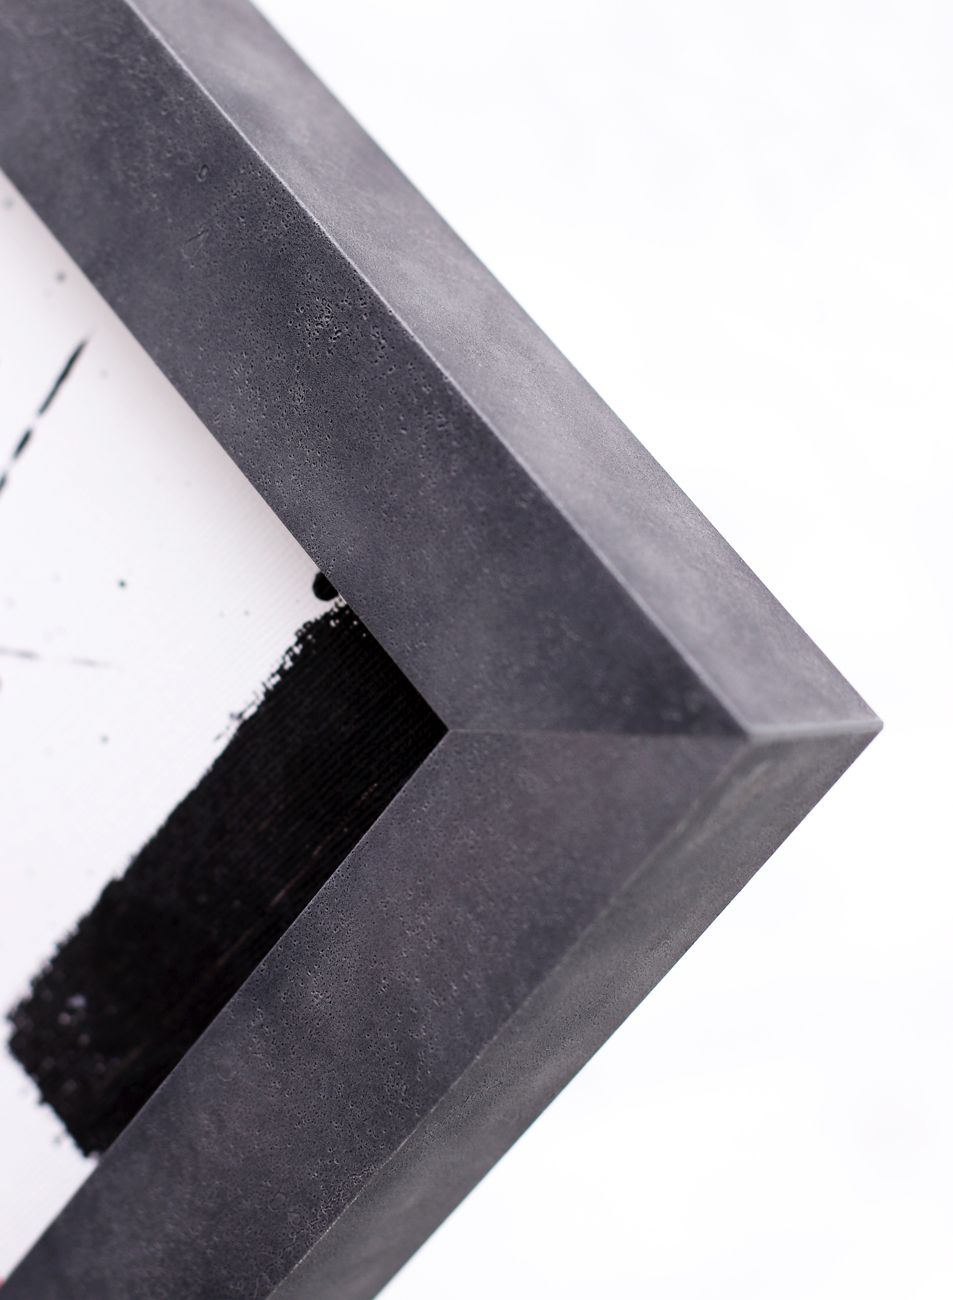 Industriální rámování obrazu do rámu vzhledu šedého betonu | © Rámařství Frame it